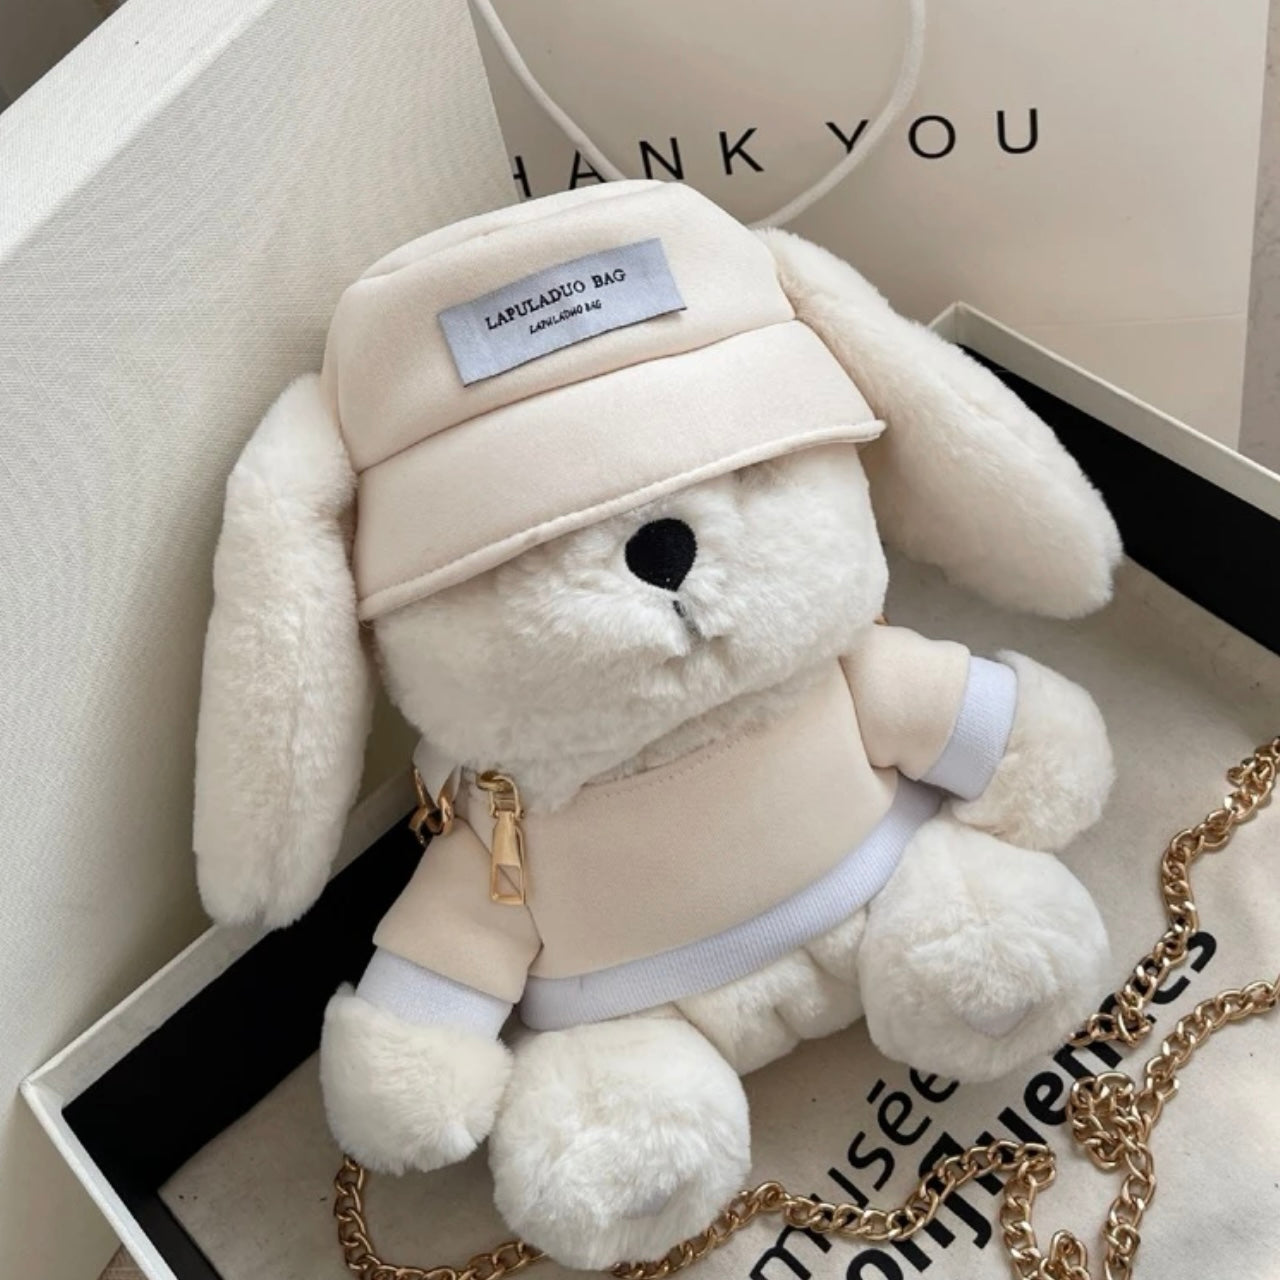 The Super Plush Cute Teddy Bear Bag, Hand Bag